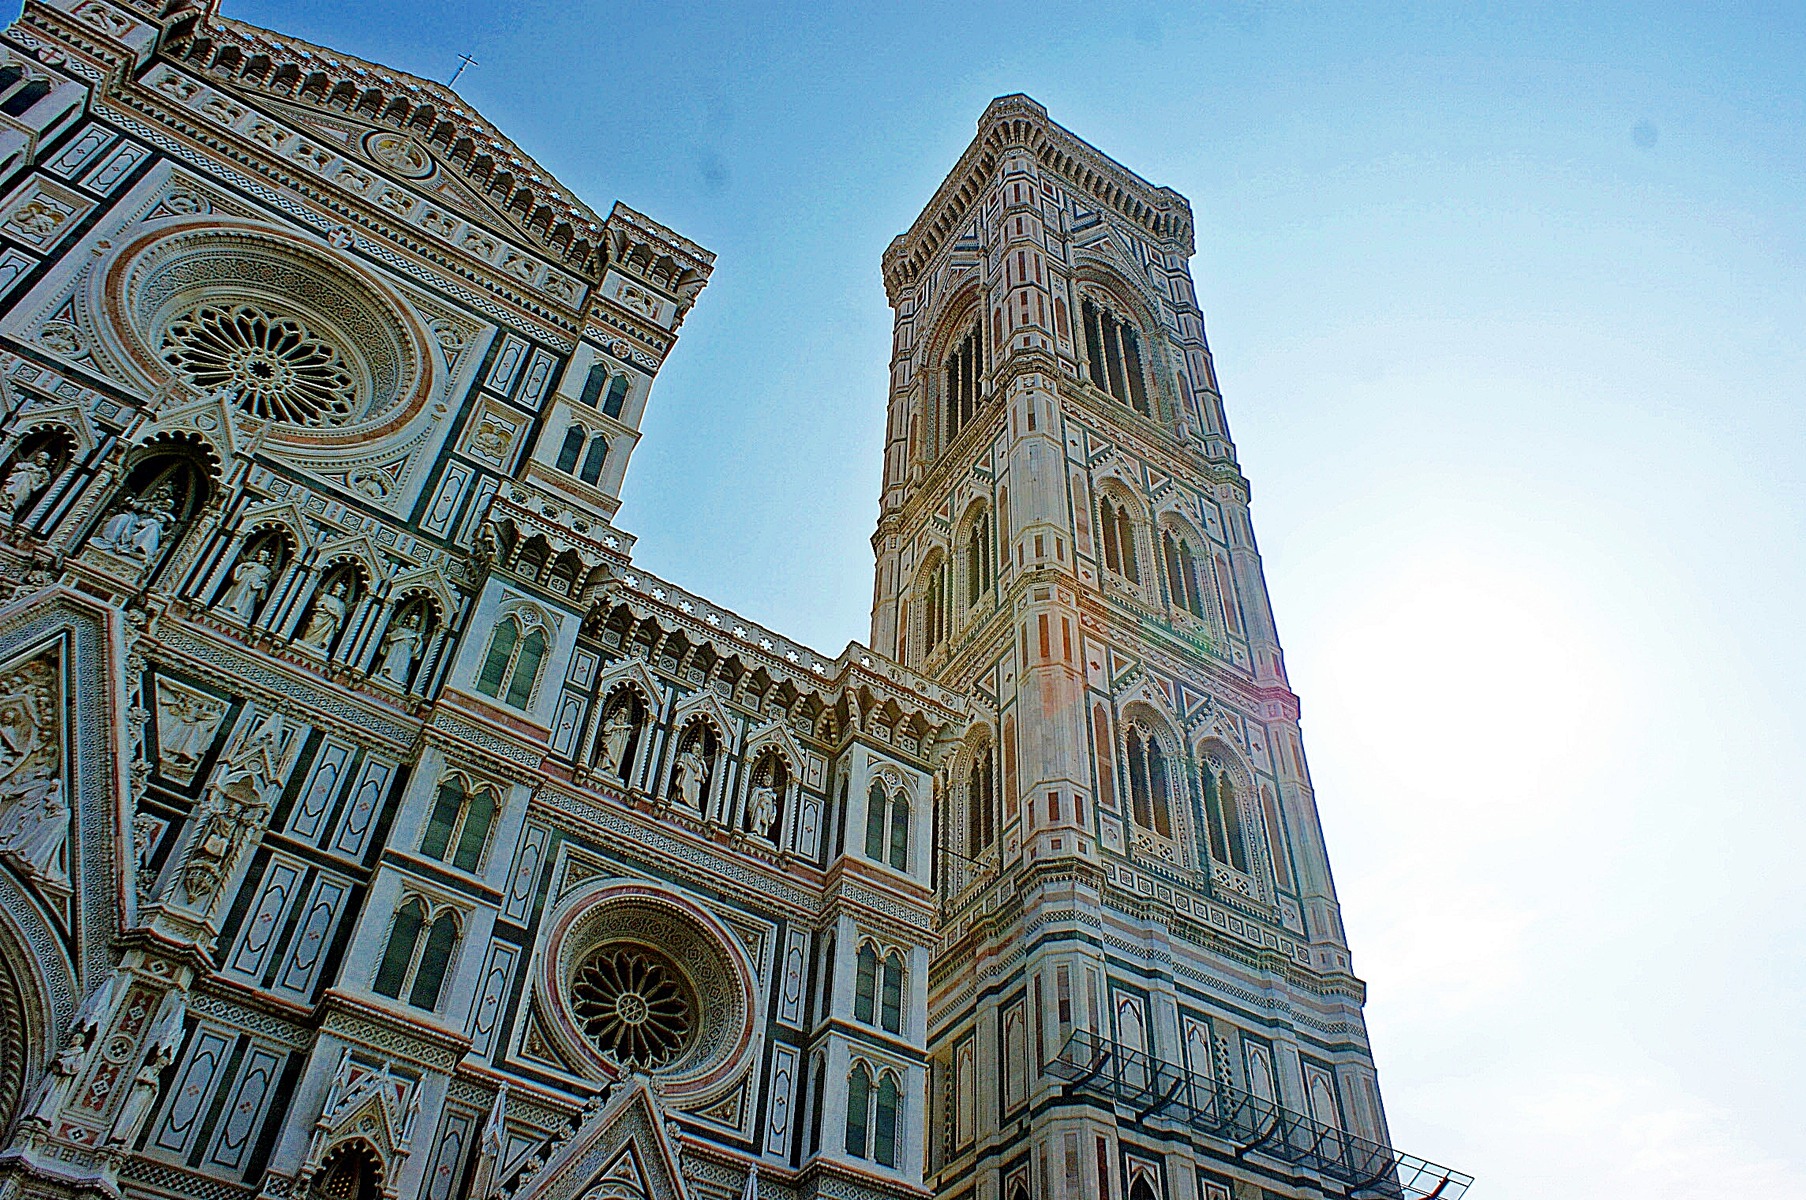 Campanile di Giotto Firenze